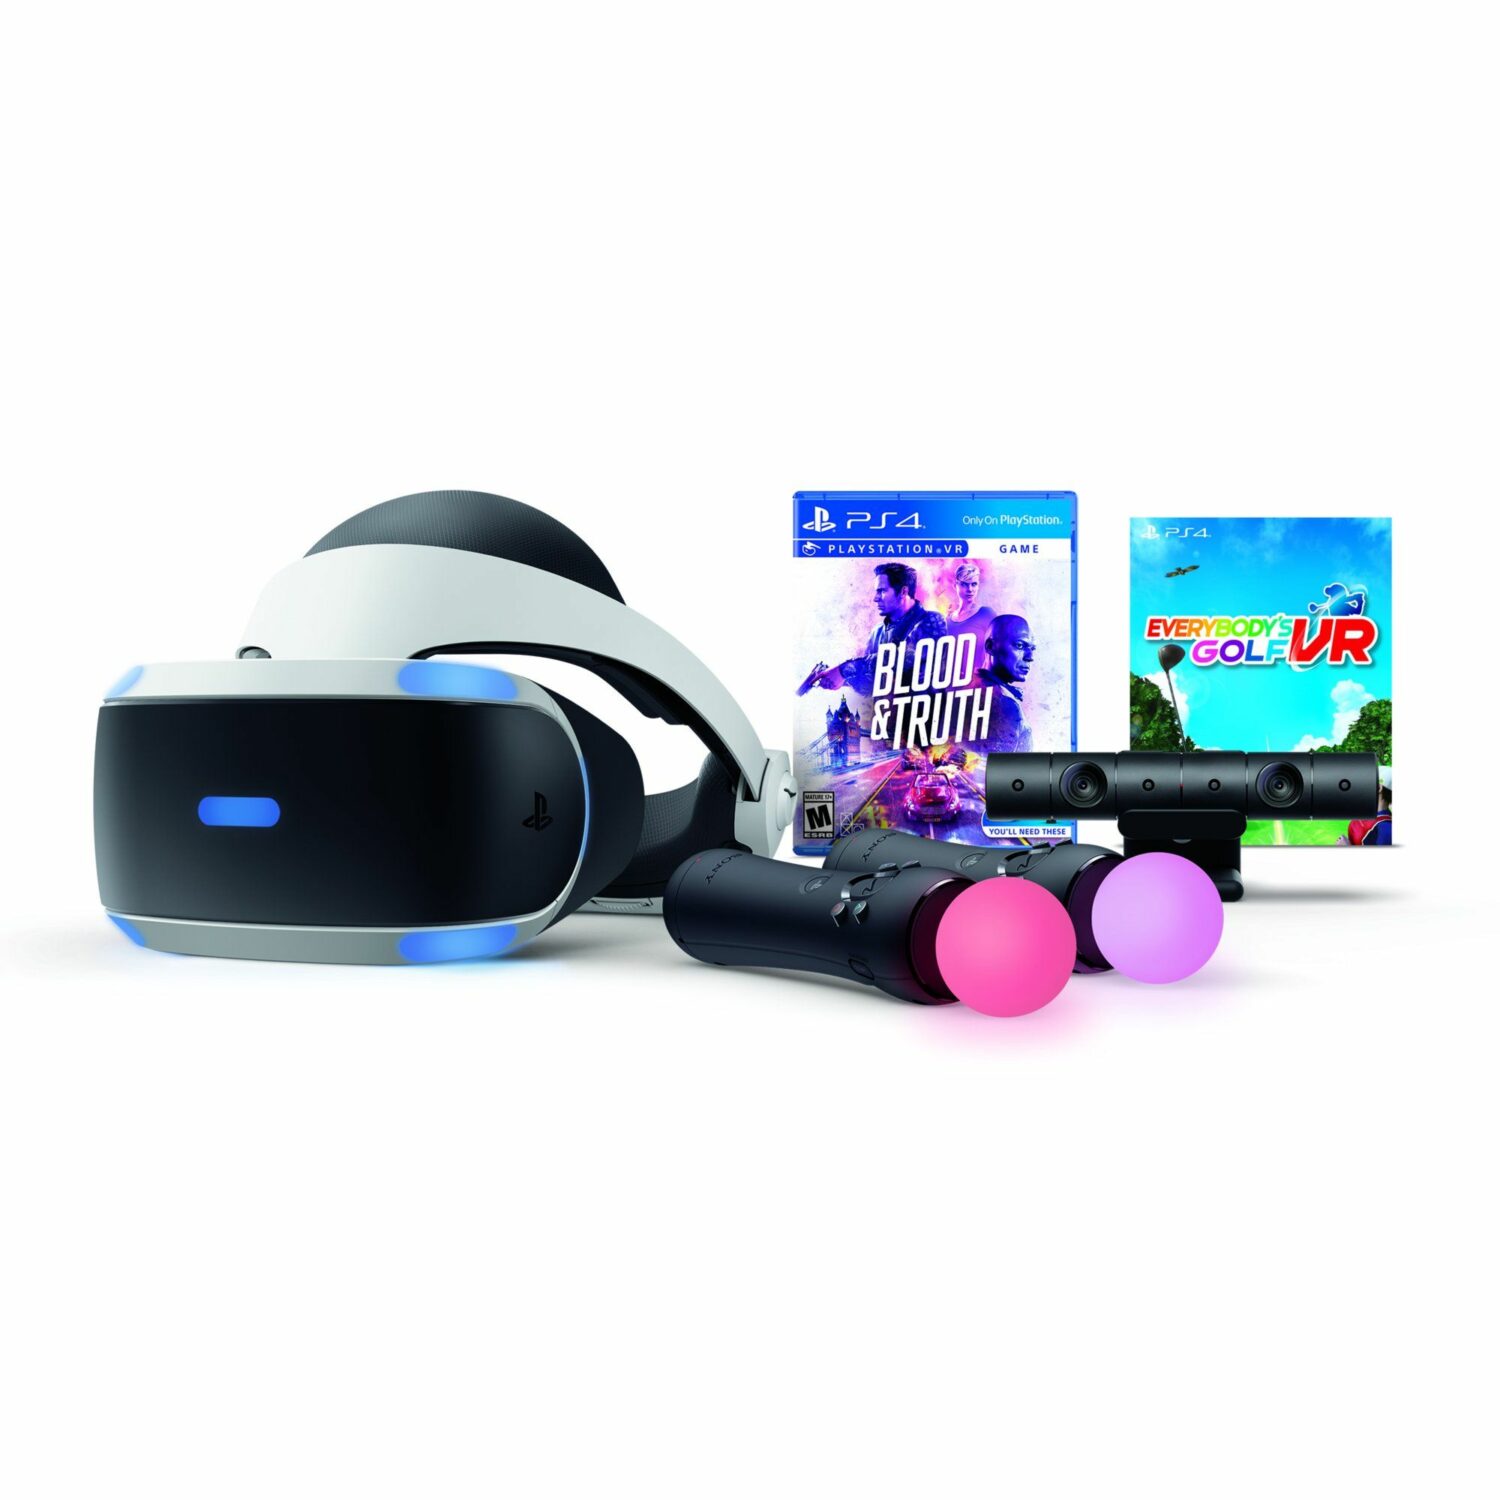 PlayStation VR : Sony présente plusieurs nouveaux jeux PlayStation